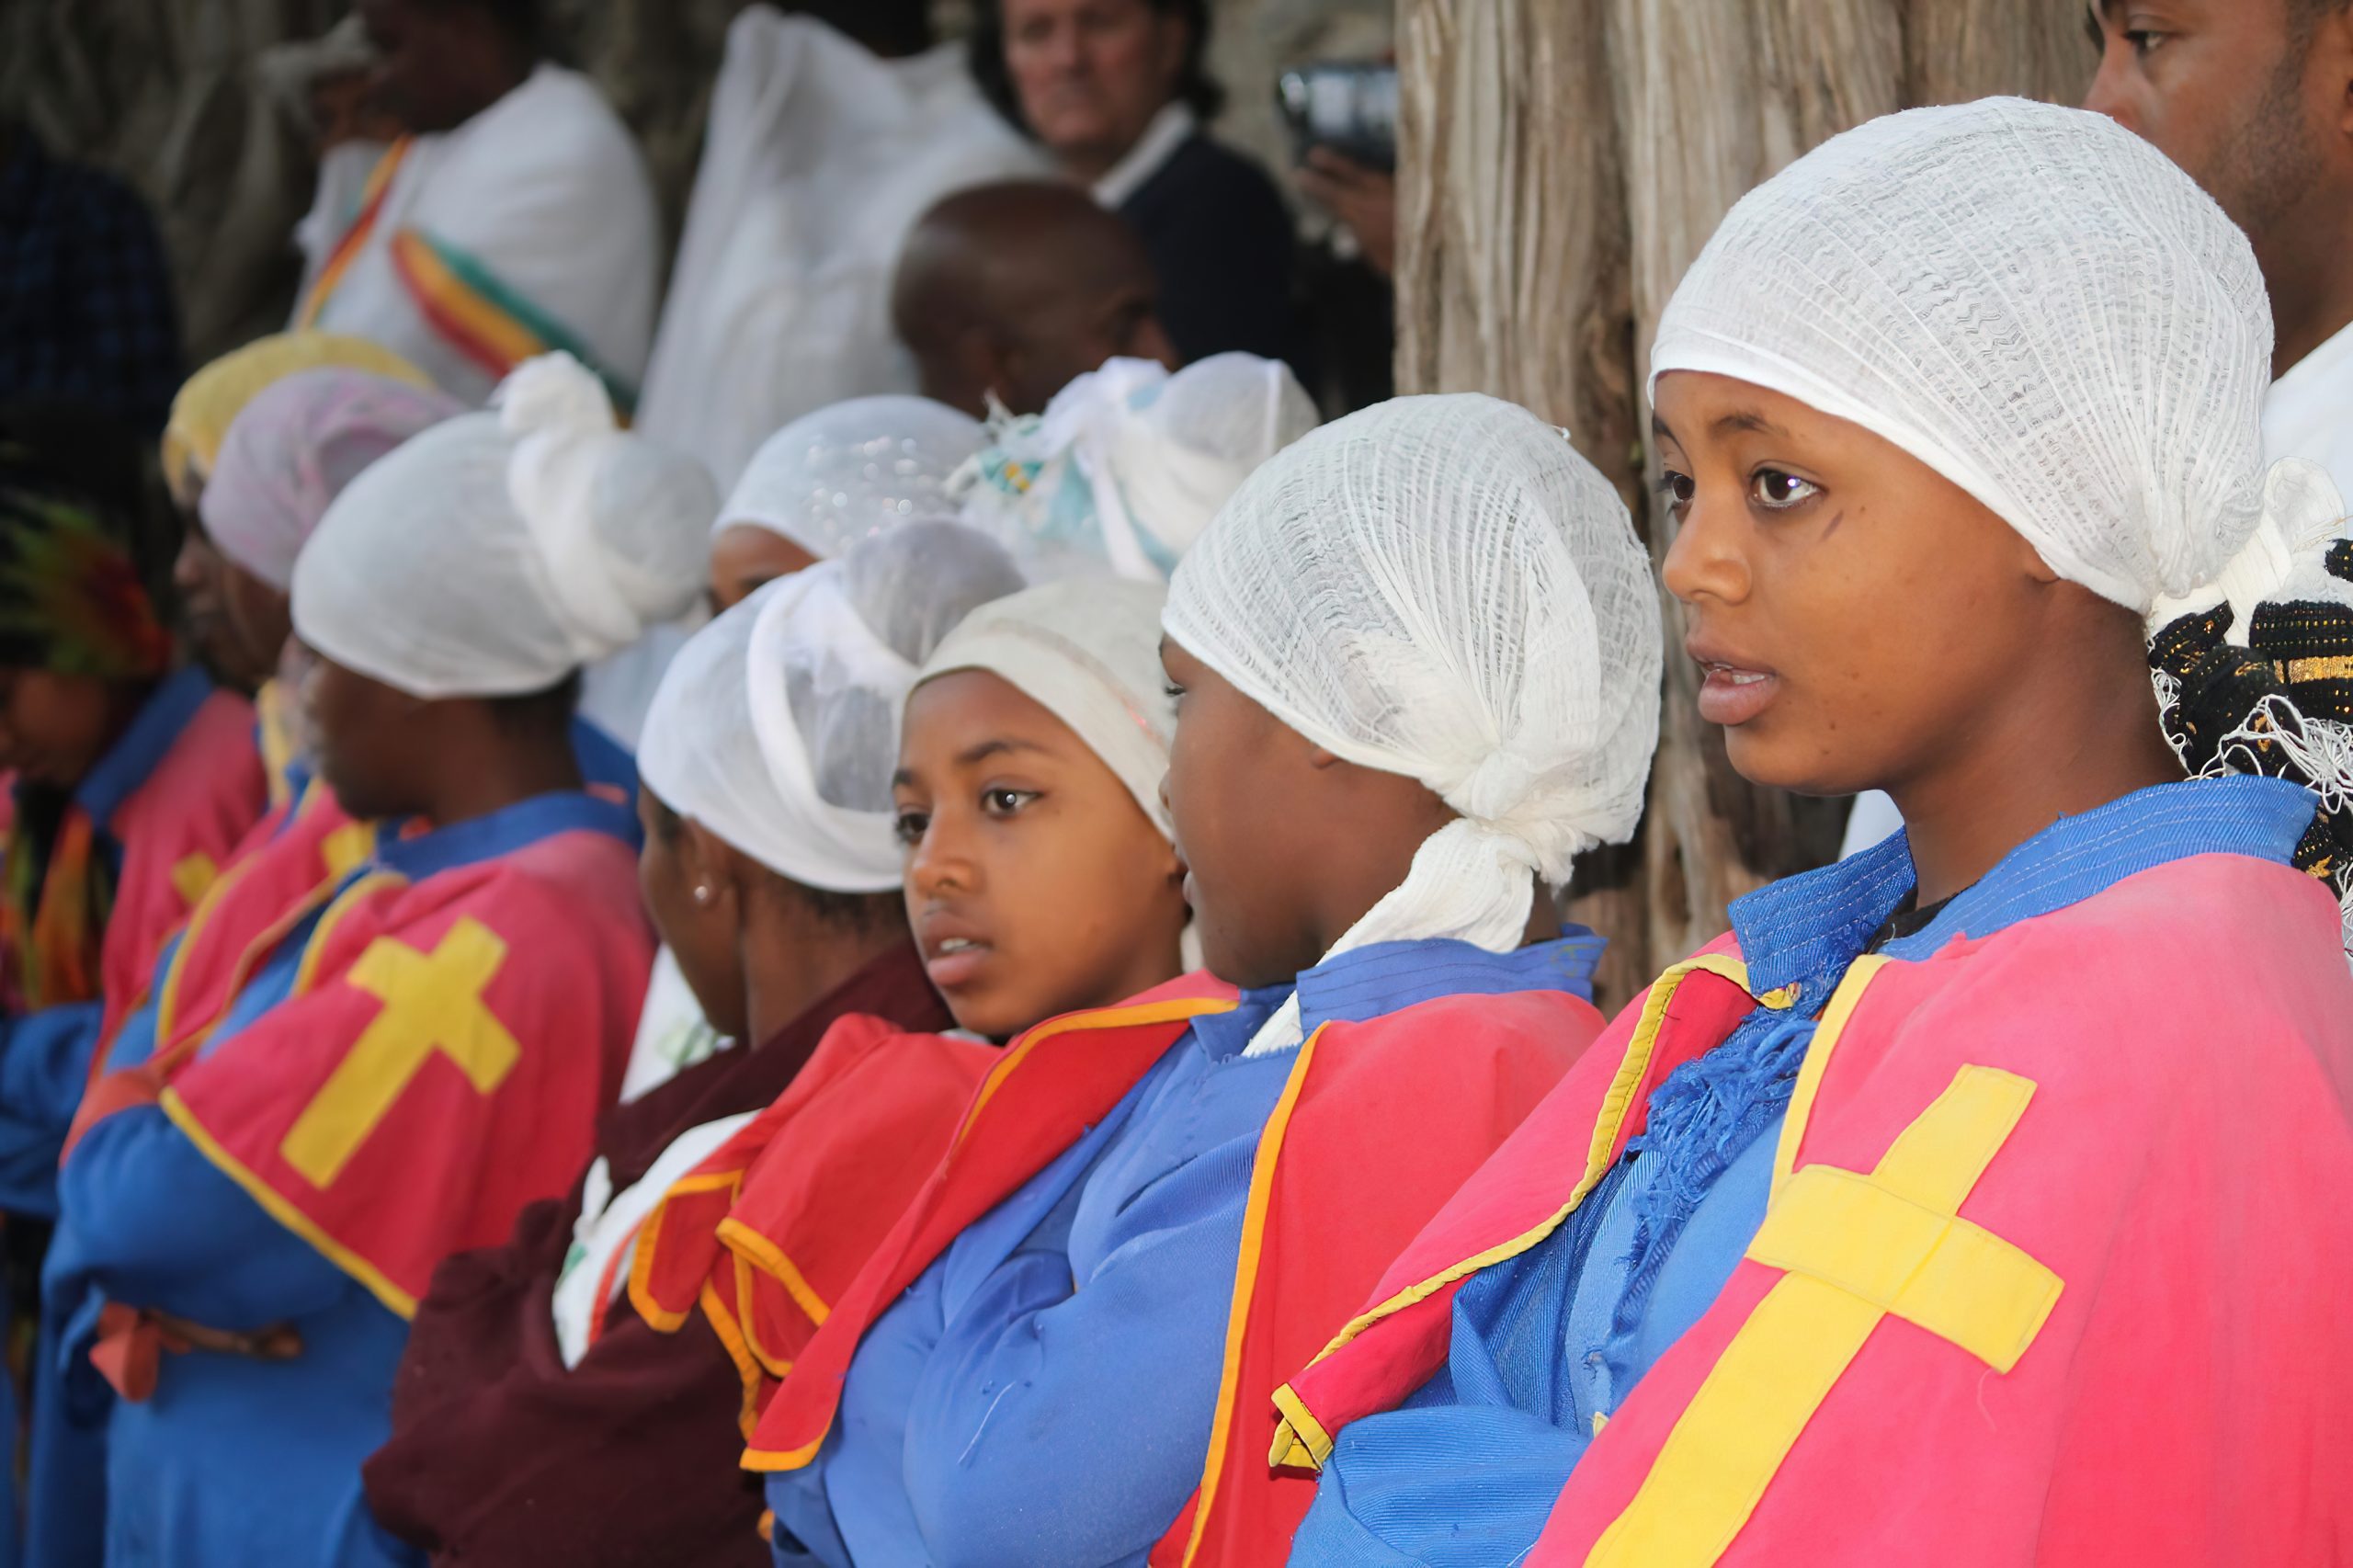 TOURISM IN ETHIOPIA